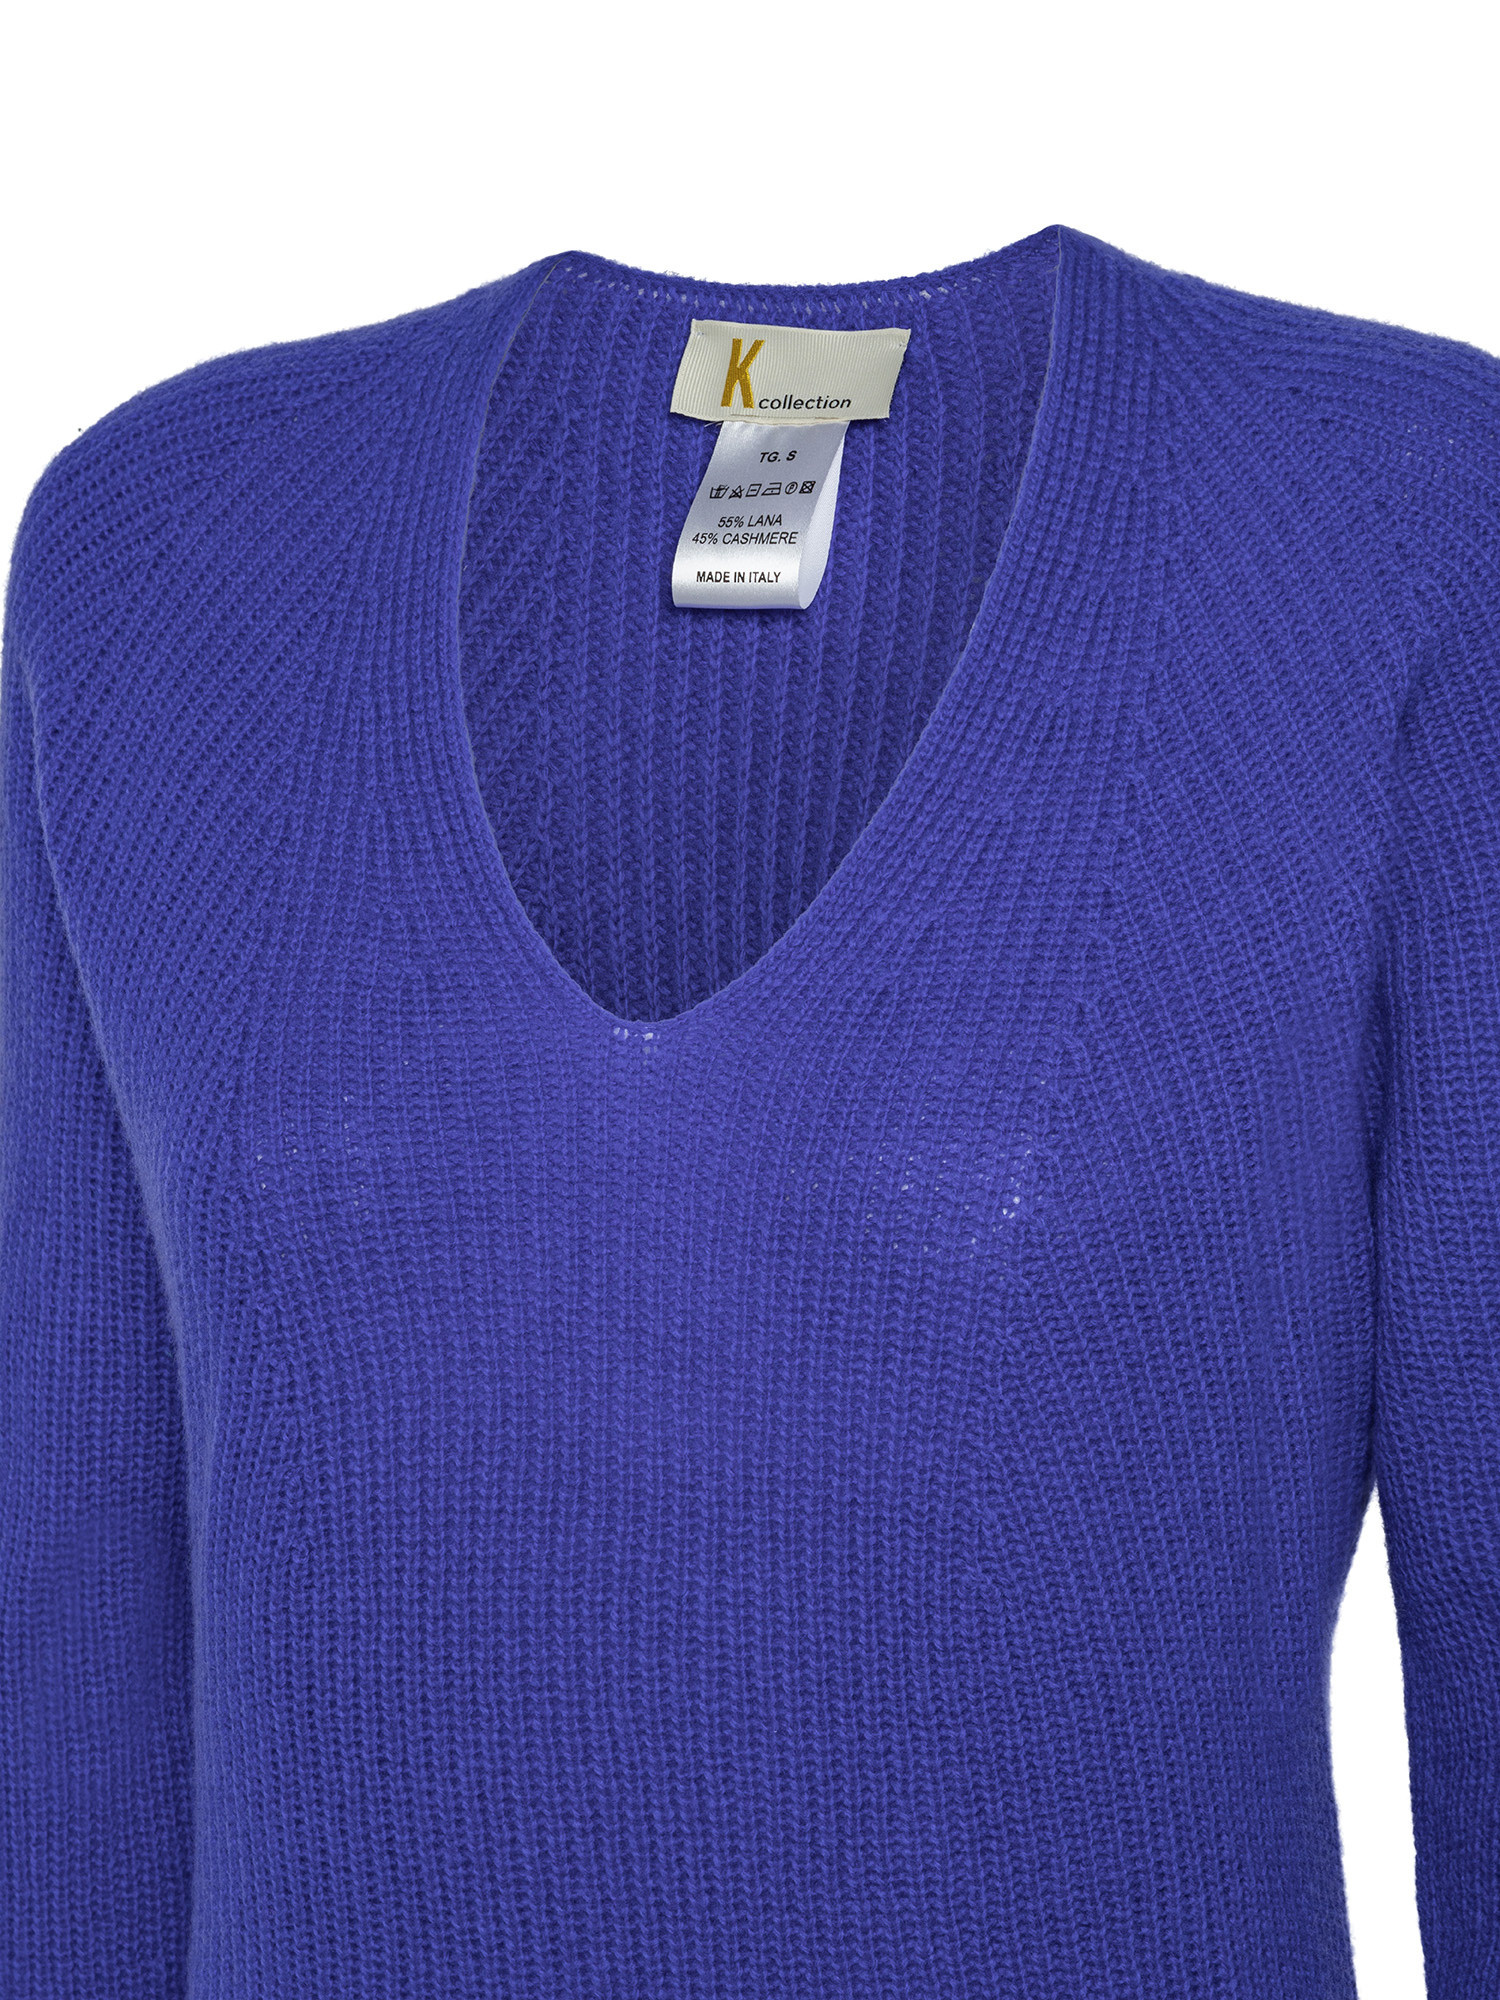 K Collection - V-neck sweater, Royal Blue, large image number 2